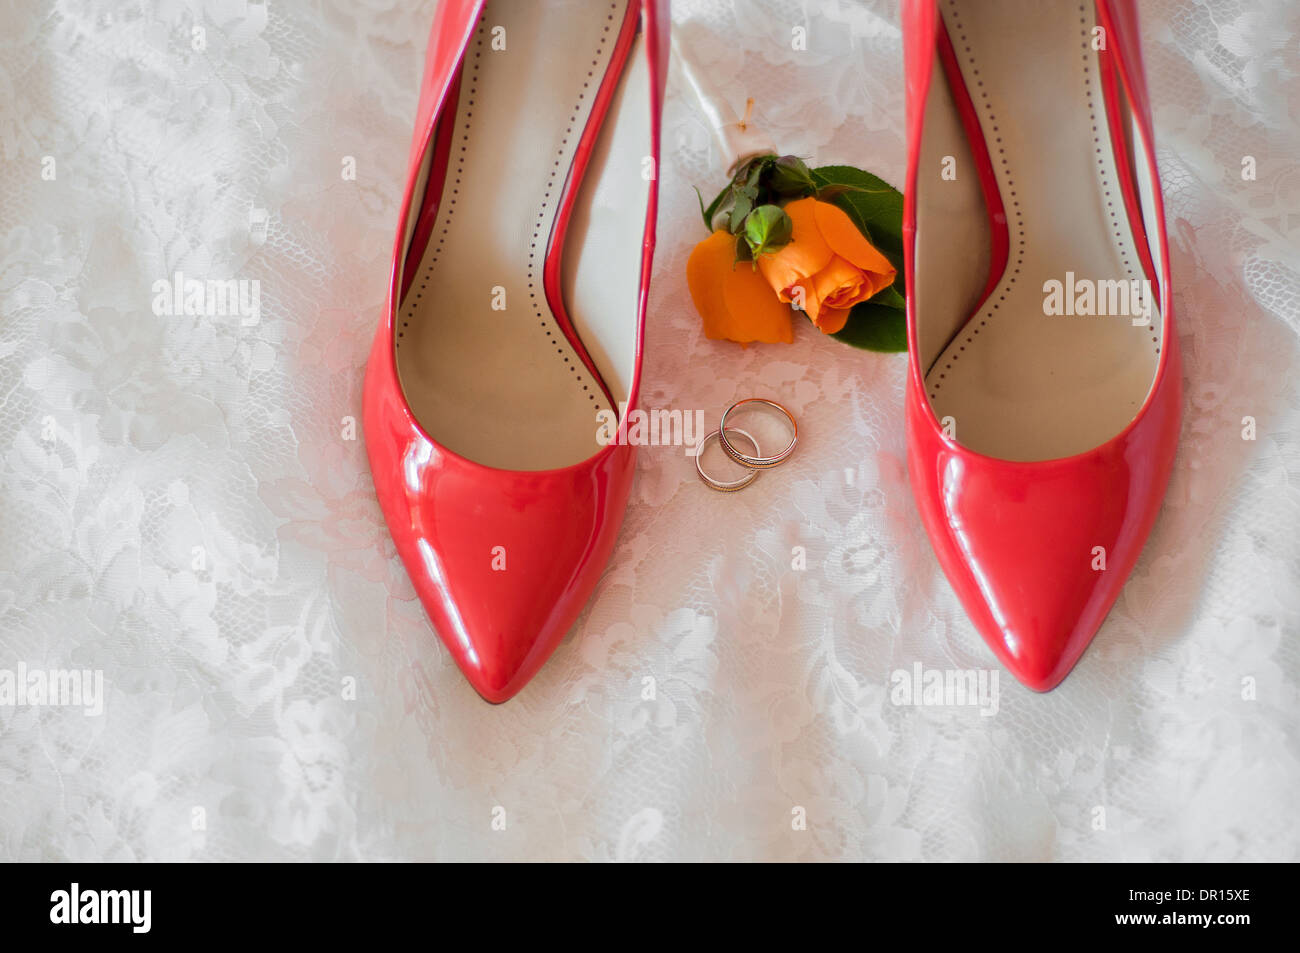 rote Schuhe der Braut, Trauringe und Knopfloch auf ein Brautkleid  Stockfotografie - Alamy